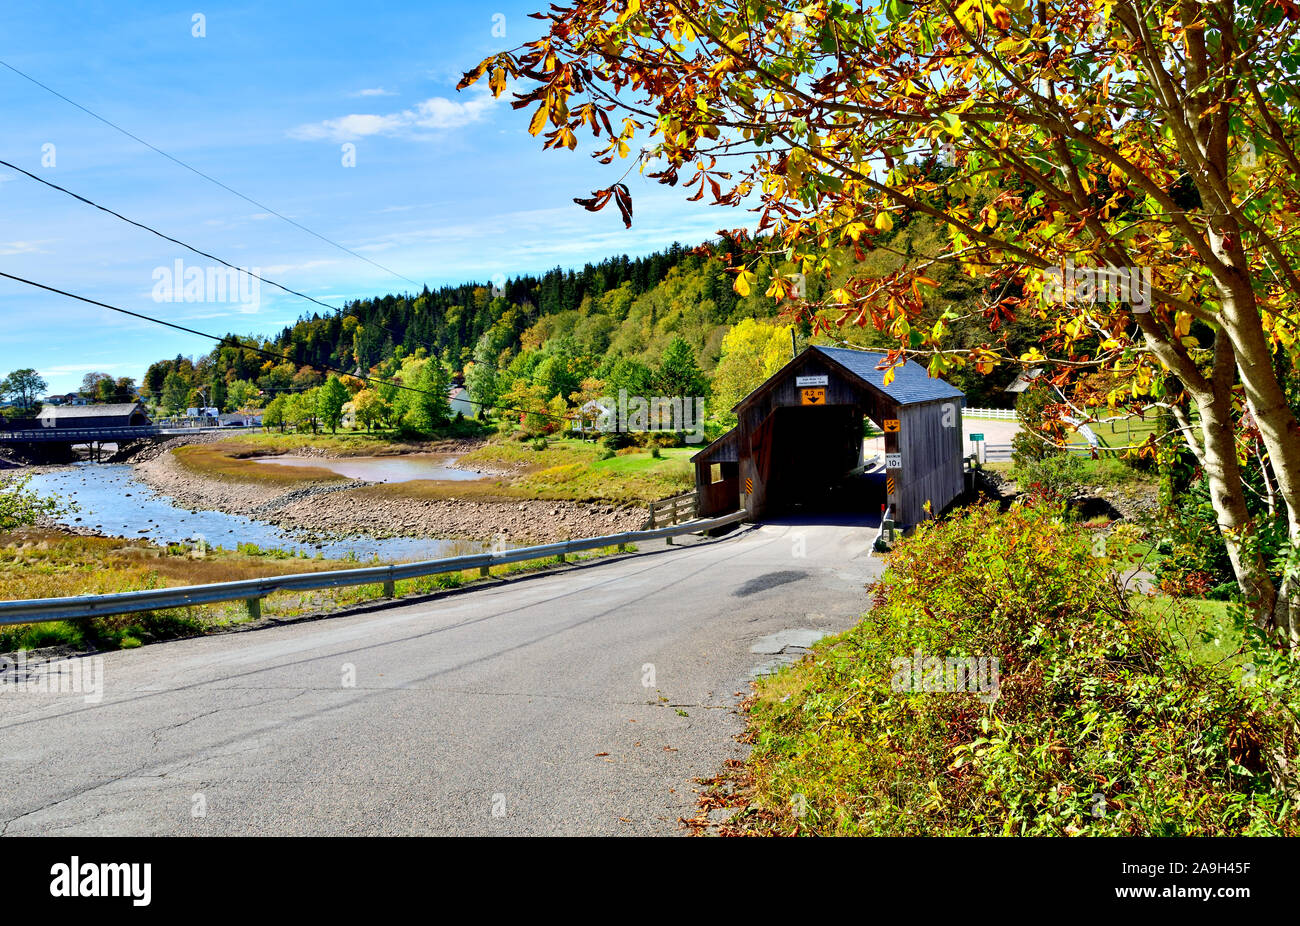 Ein Herbst Landschaft Blick auf eine ikonische Hardscrabble Covered Bridge im Jahr 1946 gebaut, der Überquerung der Irischen Fluss in St. Martins, New Brunswick Kanada. Stockfoto